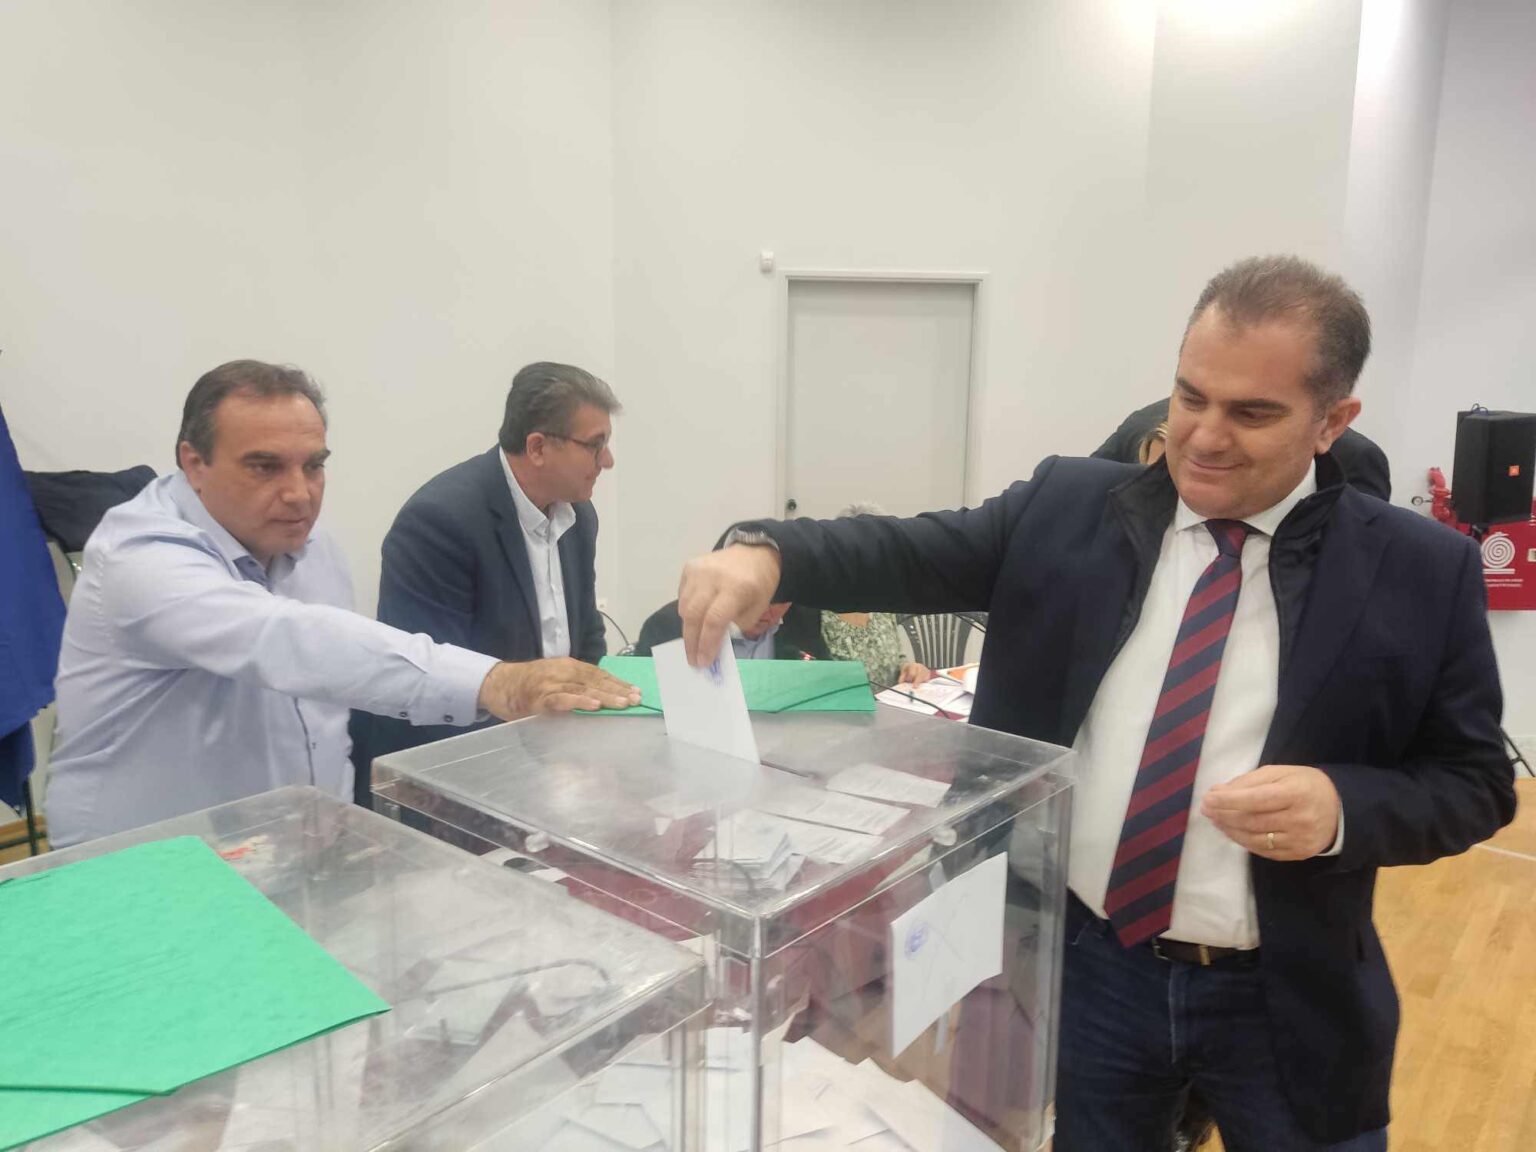 Ο Θανάσης Βασιλόπουλος νέος πρόεδρος της Περιφερειακής Ένωσης Δήμων Πελοποννήσου